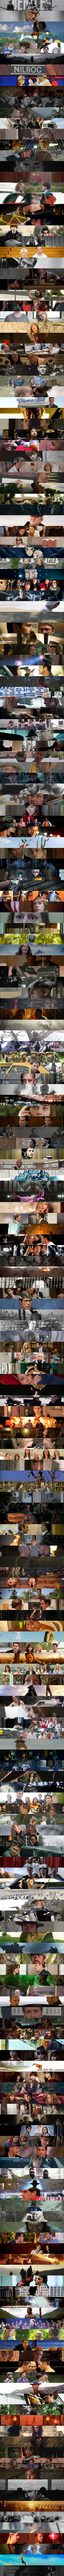 2011-movie-journal-collage-1s